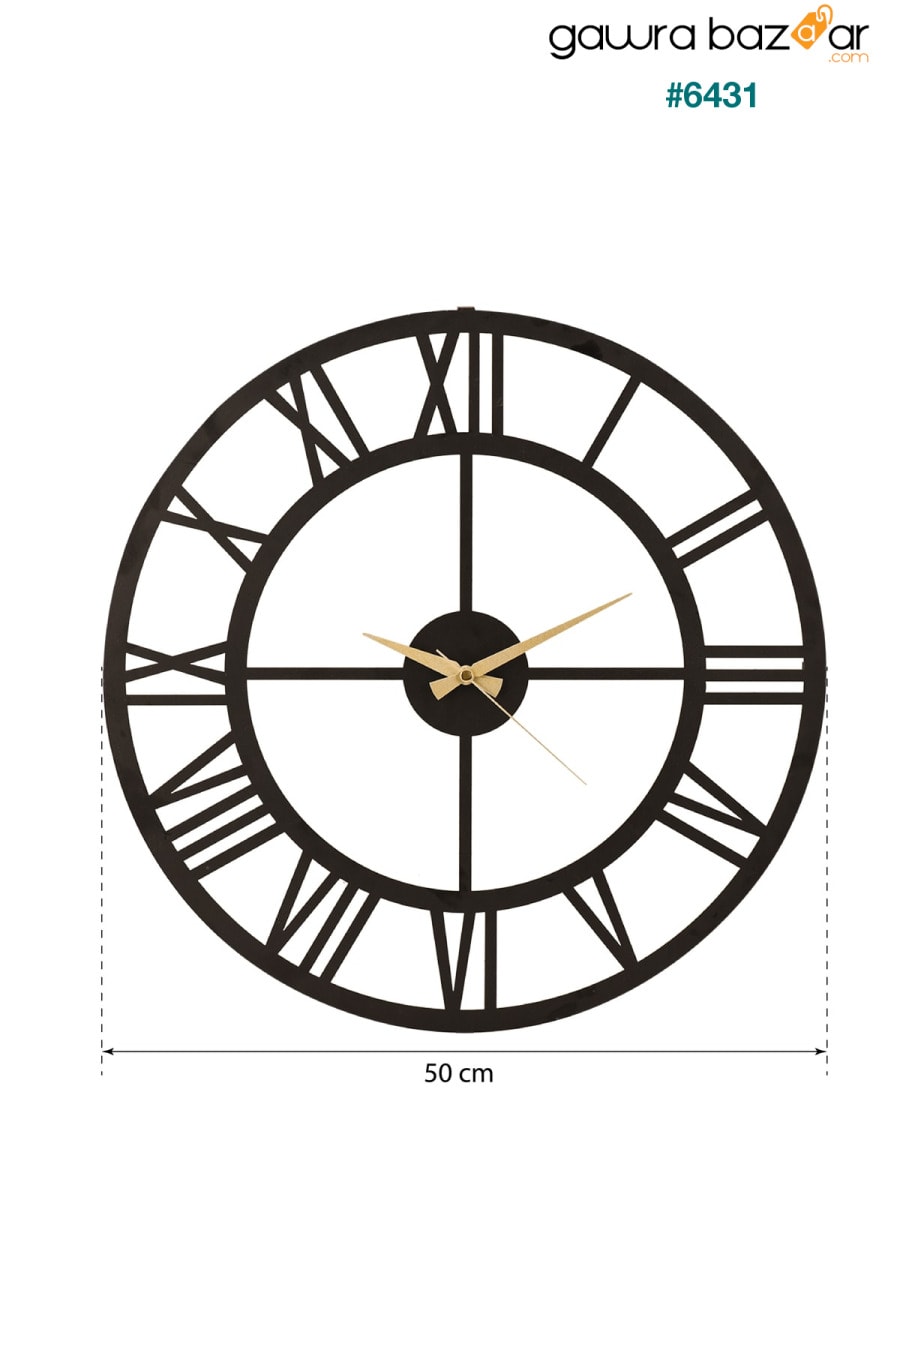 مويكا ساعة حائط معدنية بأرقام رومانية سوداء 50x50 سم Mds-50 Muyika Design 6